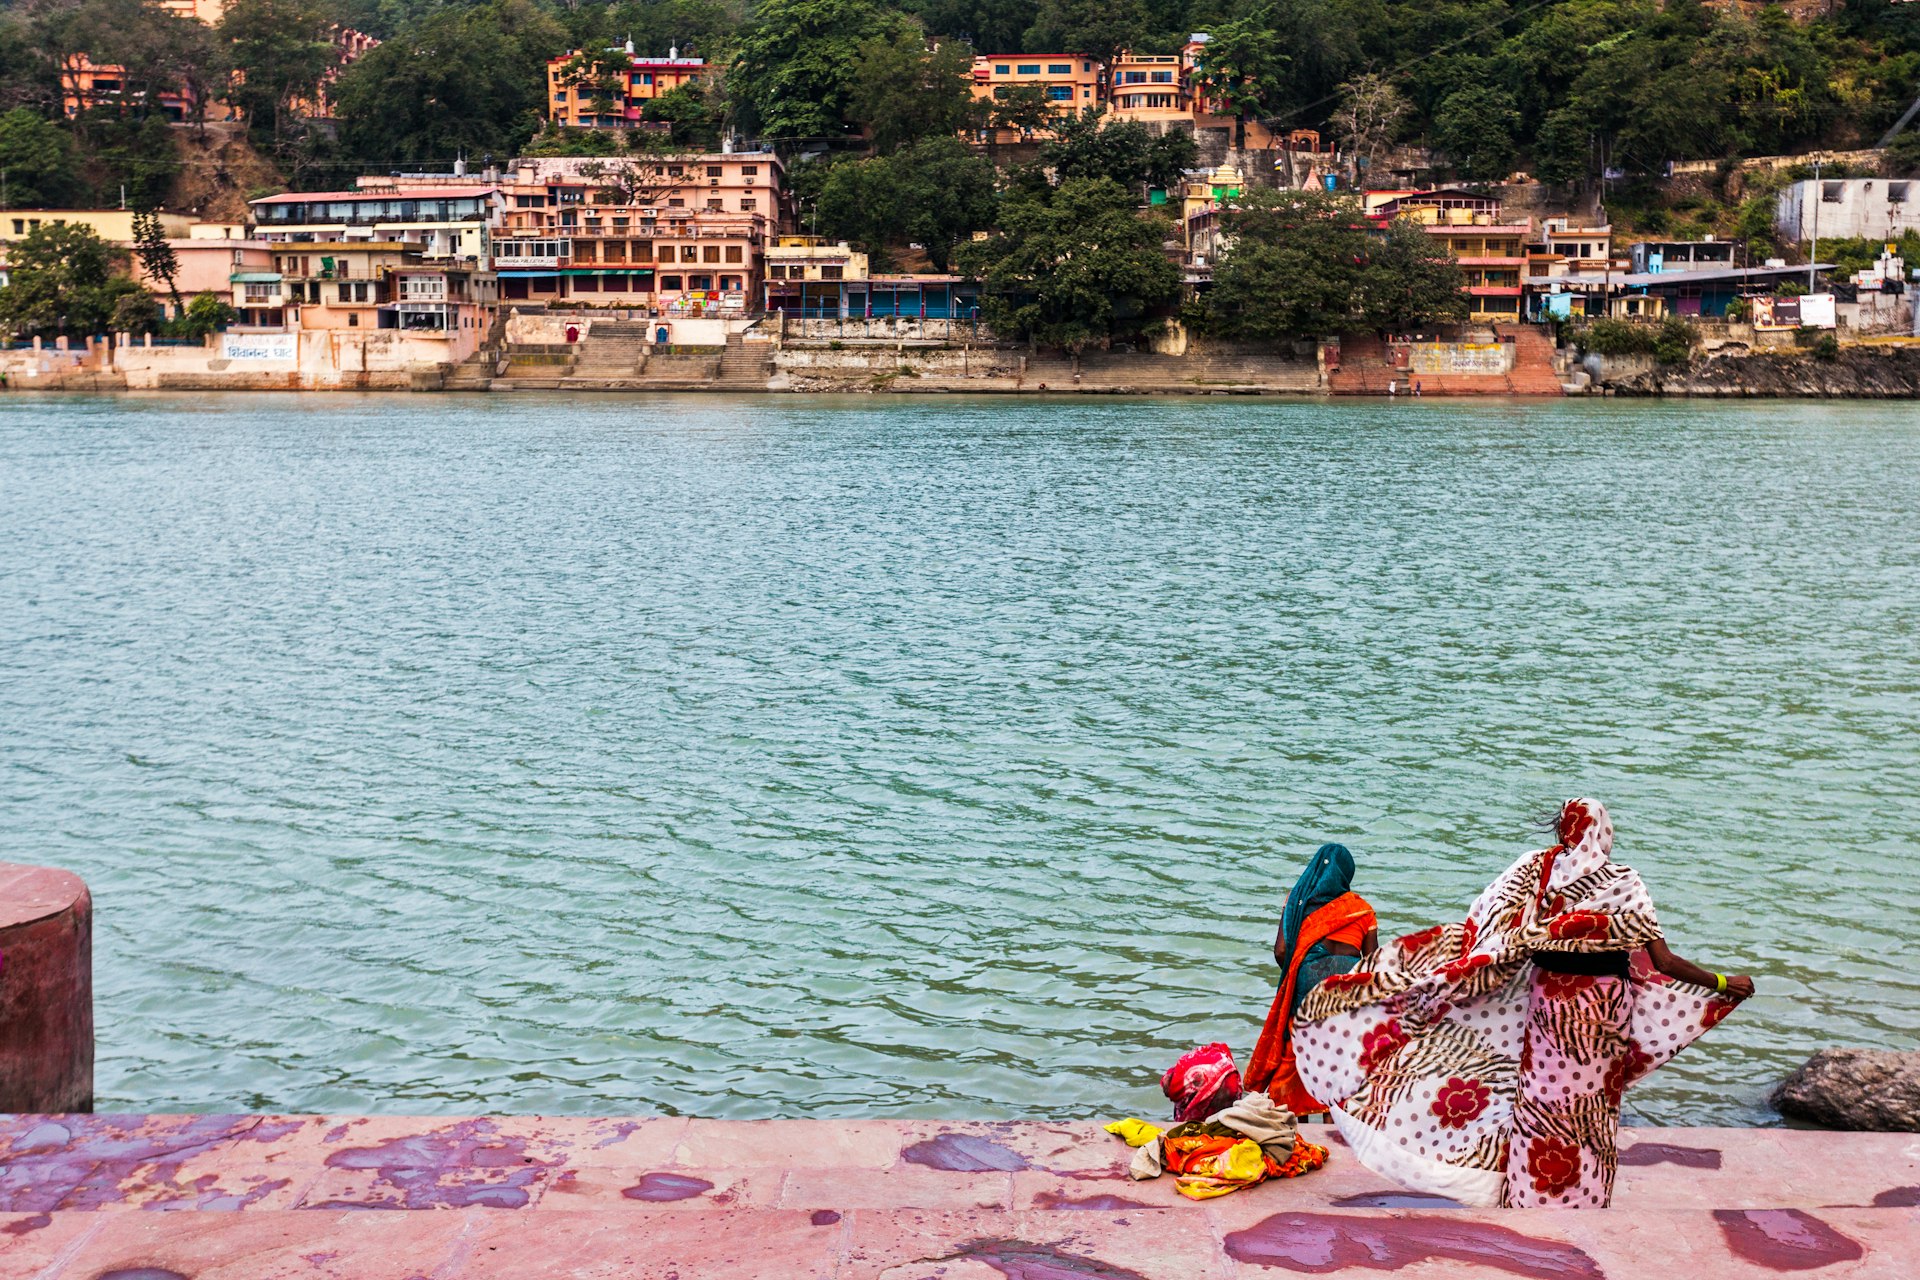 Yoga town of Rishikesh, Uttarakhand, India